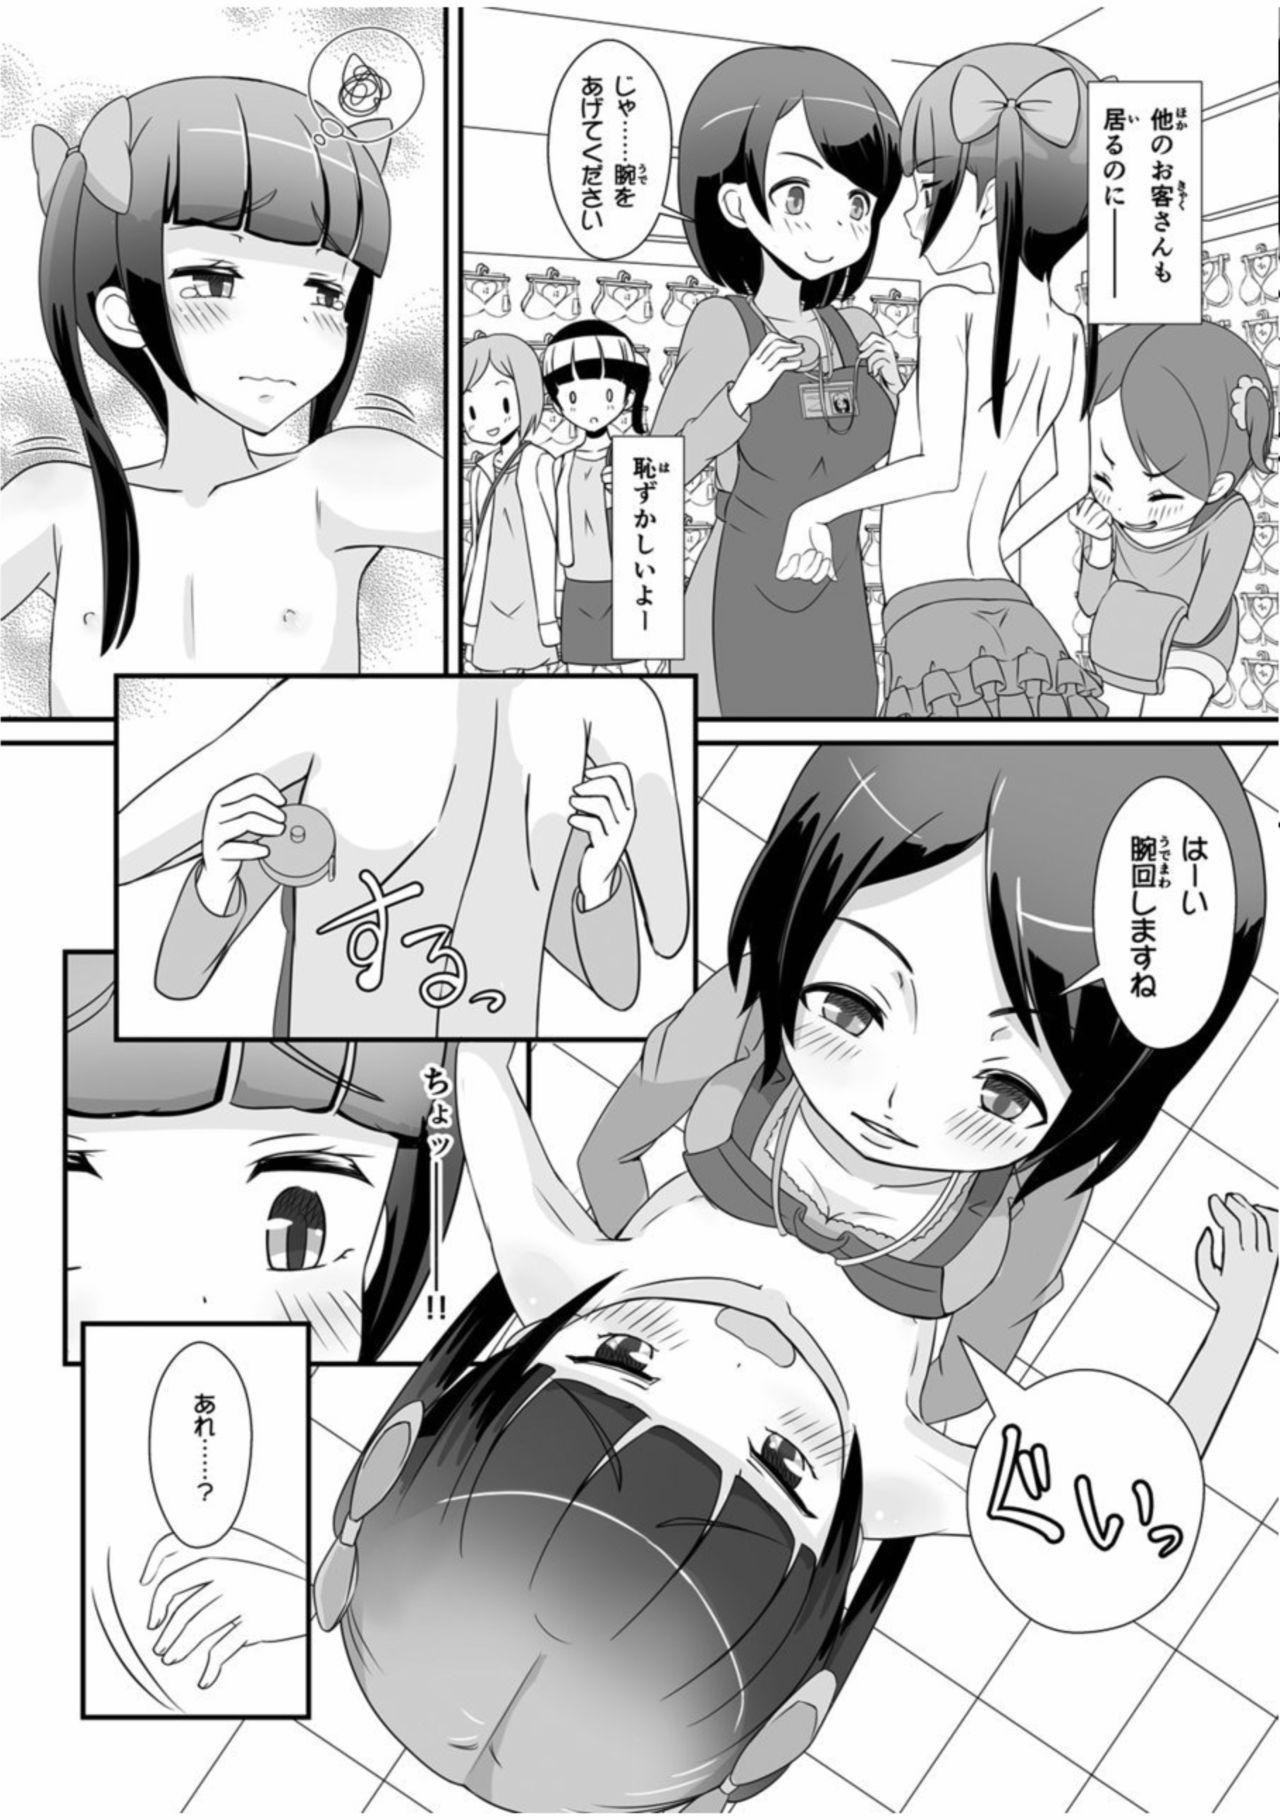 Mamadas Sensei! Chotto "Jojisou" Shitemite! - Original Sluts - Page 5